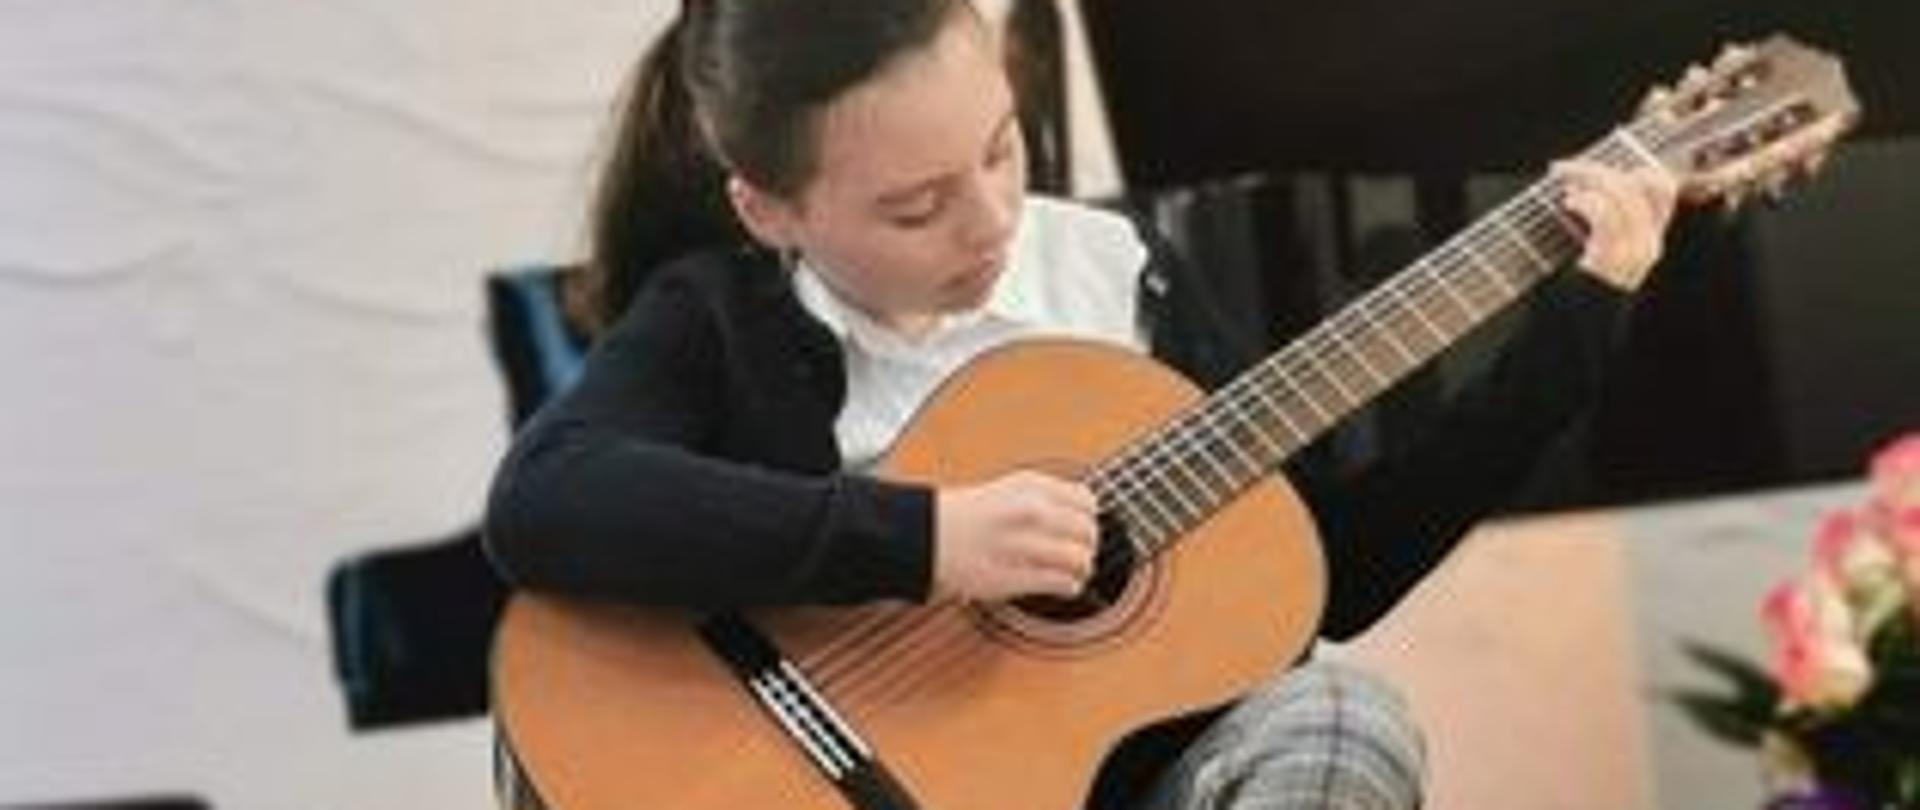 Na zdjęciu znajduje się dziewczynka grająca na gitarze, ubrana w czarny sweter, białą koszulę, spodnie w kratkę ( szaro-niebiesko-białą) i białe buty, gitara ma kolor jasnego drewna , podłoga ma kolor jasnego drewna , w tle czarny fortepian i czarny stołek do fortepianu oraz biała ściana.